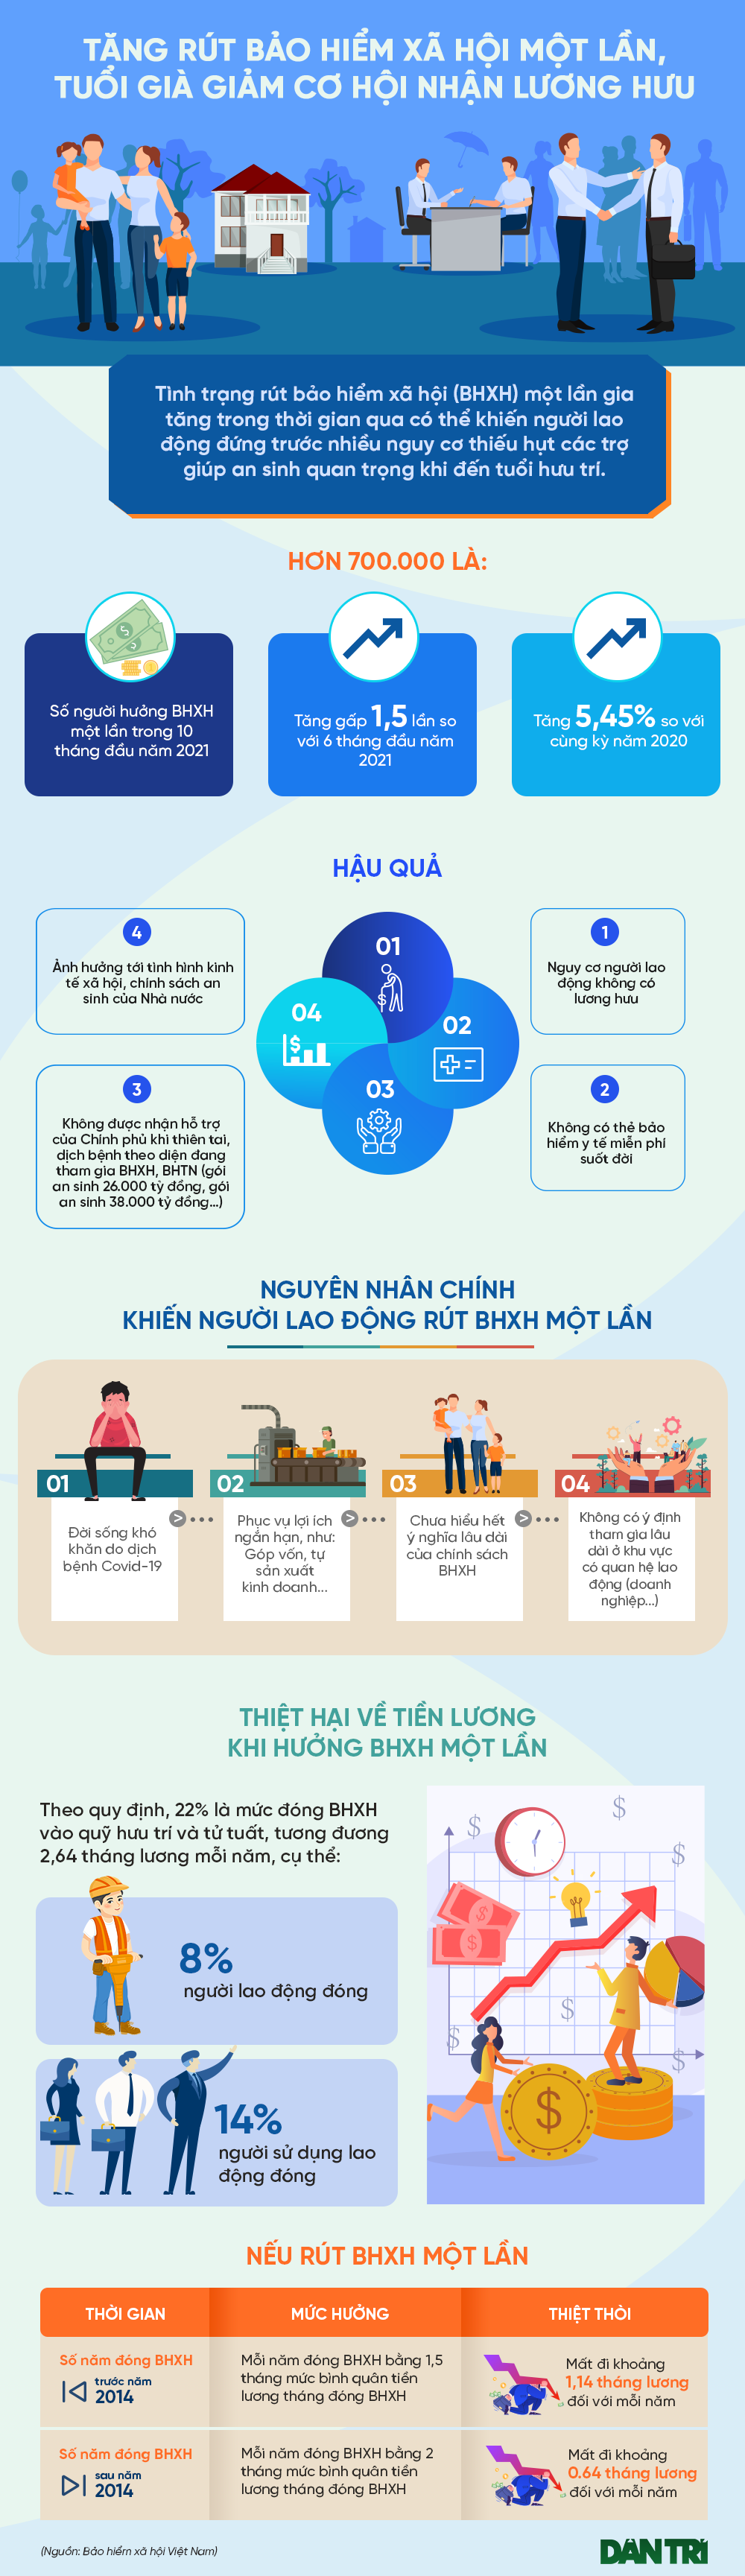 infographic-bhxh-rut-mot-lan-1638006835.png